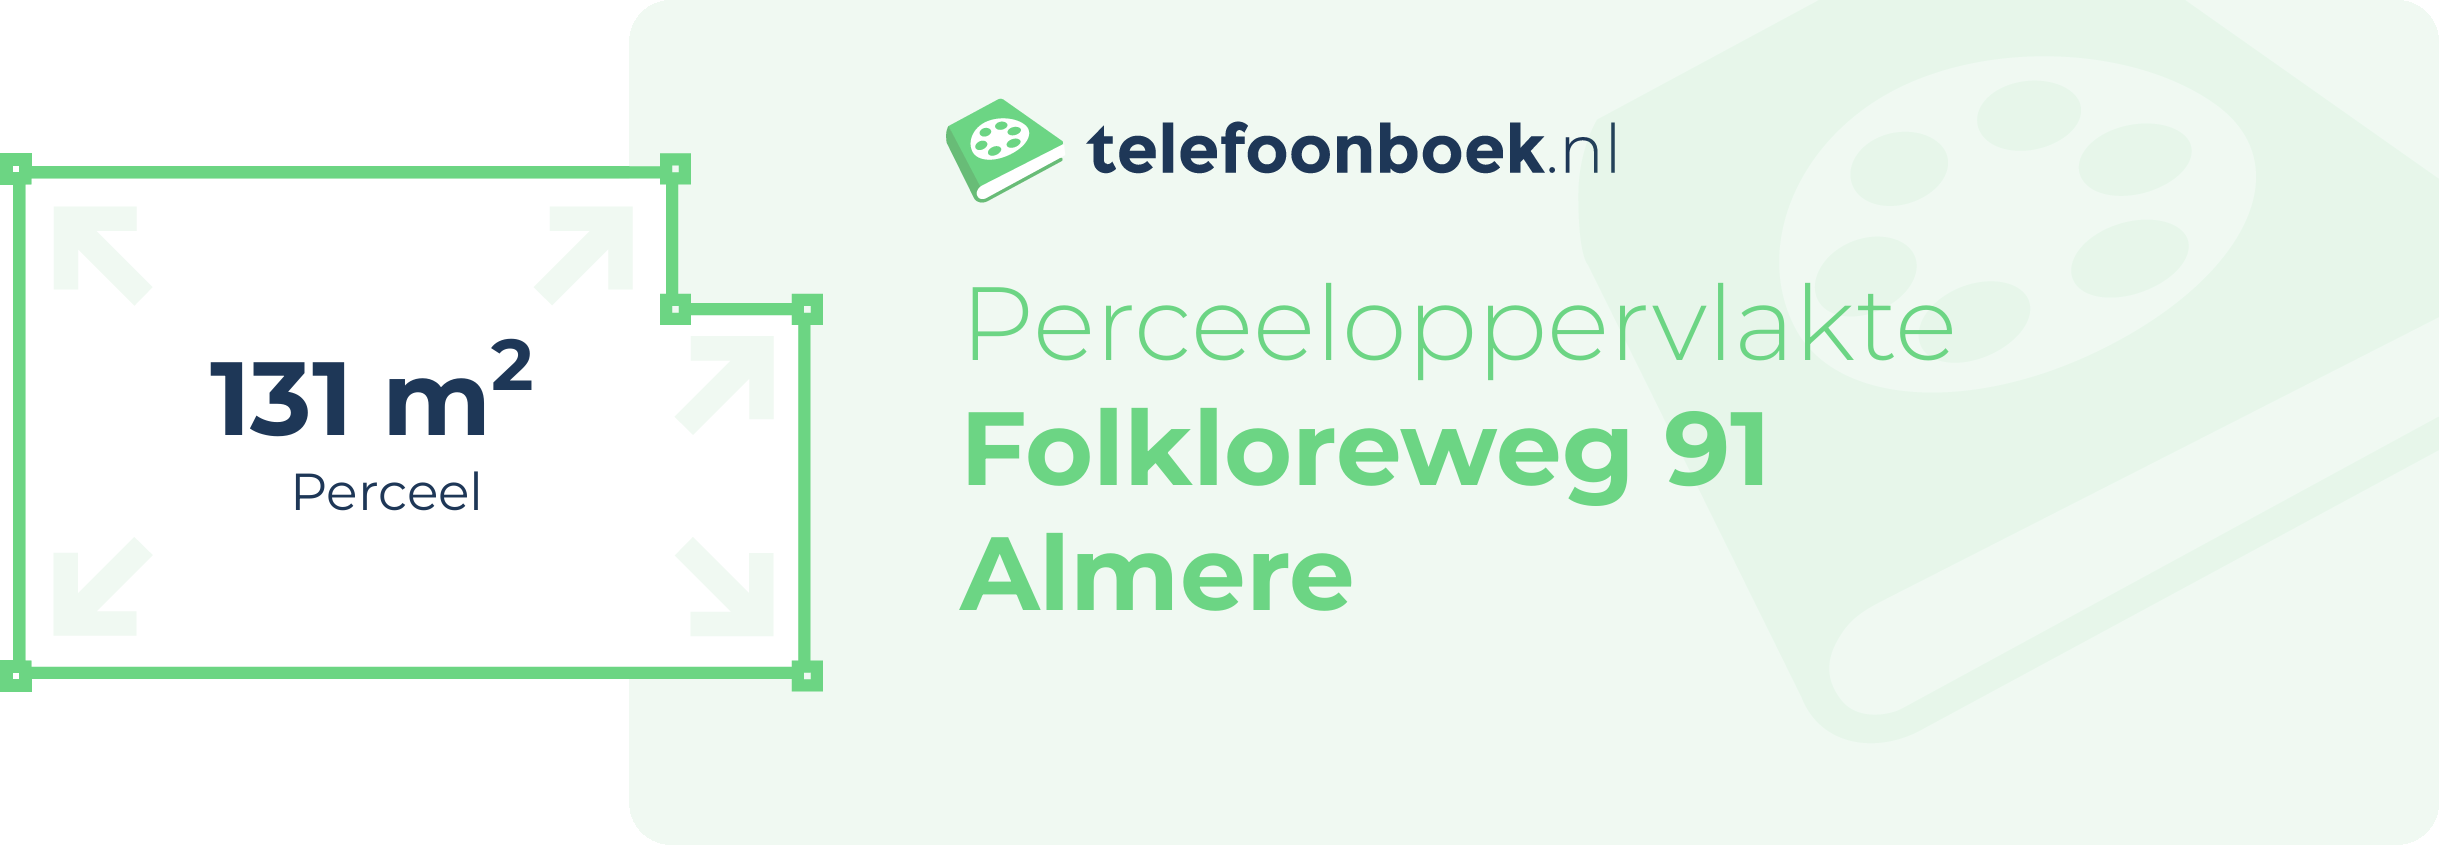 Perceeloppervlakte Folkloreweg 91 Almere